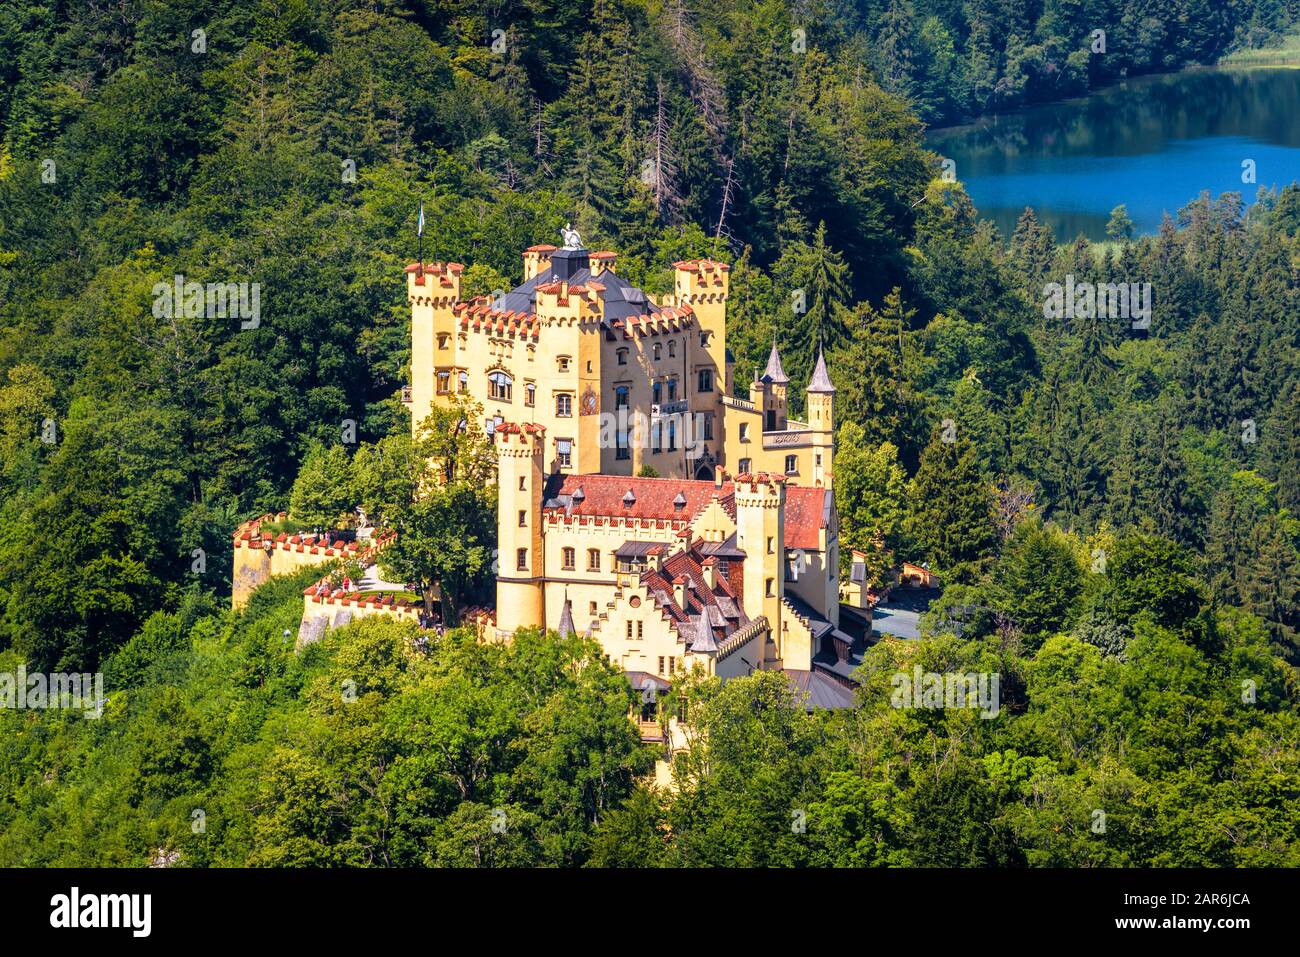 Schloss Hohenschwangau bei Füssen, Bayern, Deutschland. Diese Burg ist ein Wahrzeichen der deutschen Alpen. Rundblick auf das berühmte Schloss in Hohenschwangau d Stockfoto